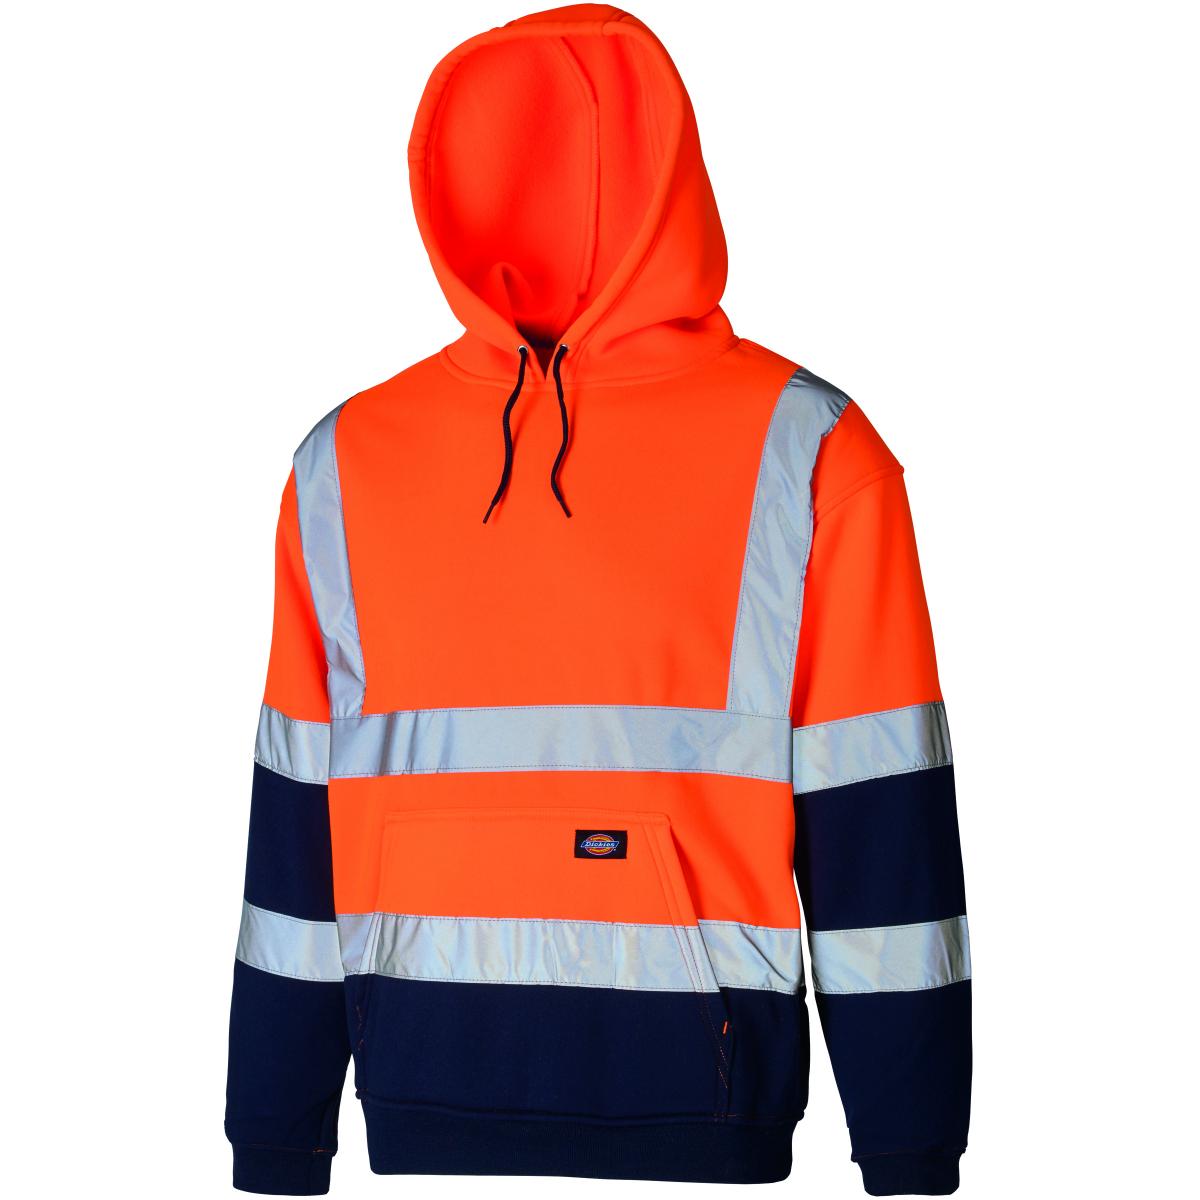 Hersteller: Dickies Herstellernummer: SA22095 Artikelbezeichnung: Hochsichtbares Zipper-Sweatshirt - EN ISO 20471:2013 Kl3 Farbe: Orange/Marineblau